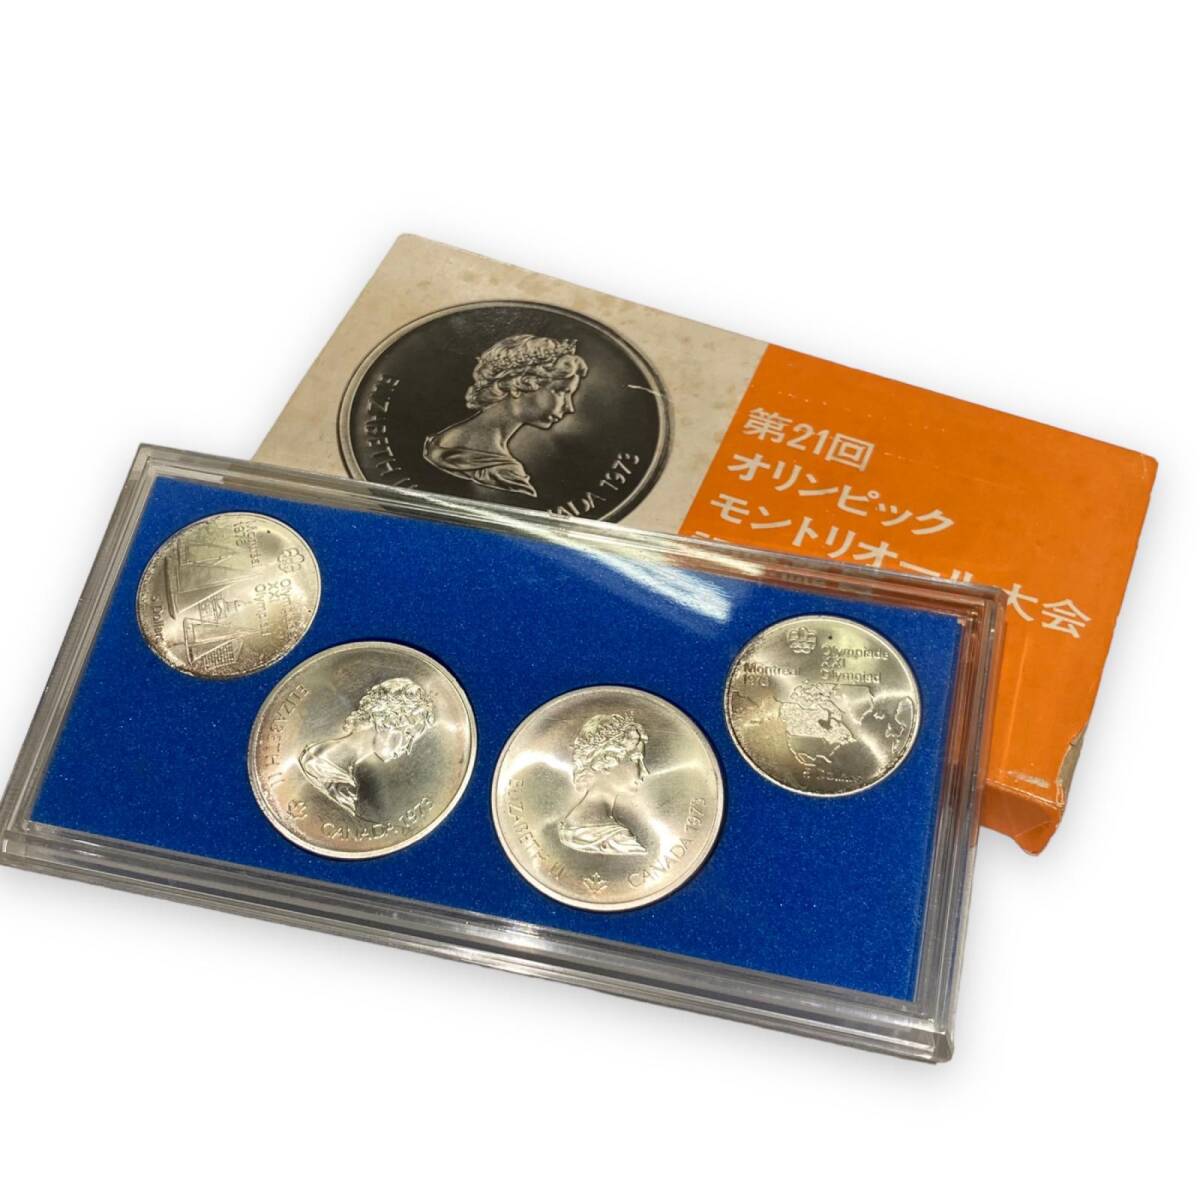 第21回 オリンピック モントリオール大会 記念銀貨 4枚セット 貨幣の画像1